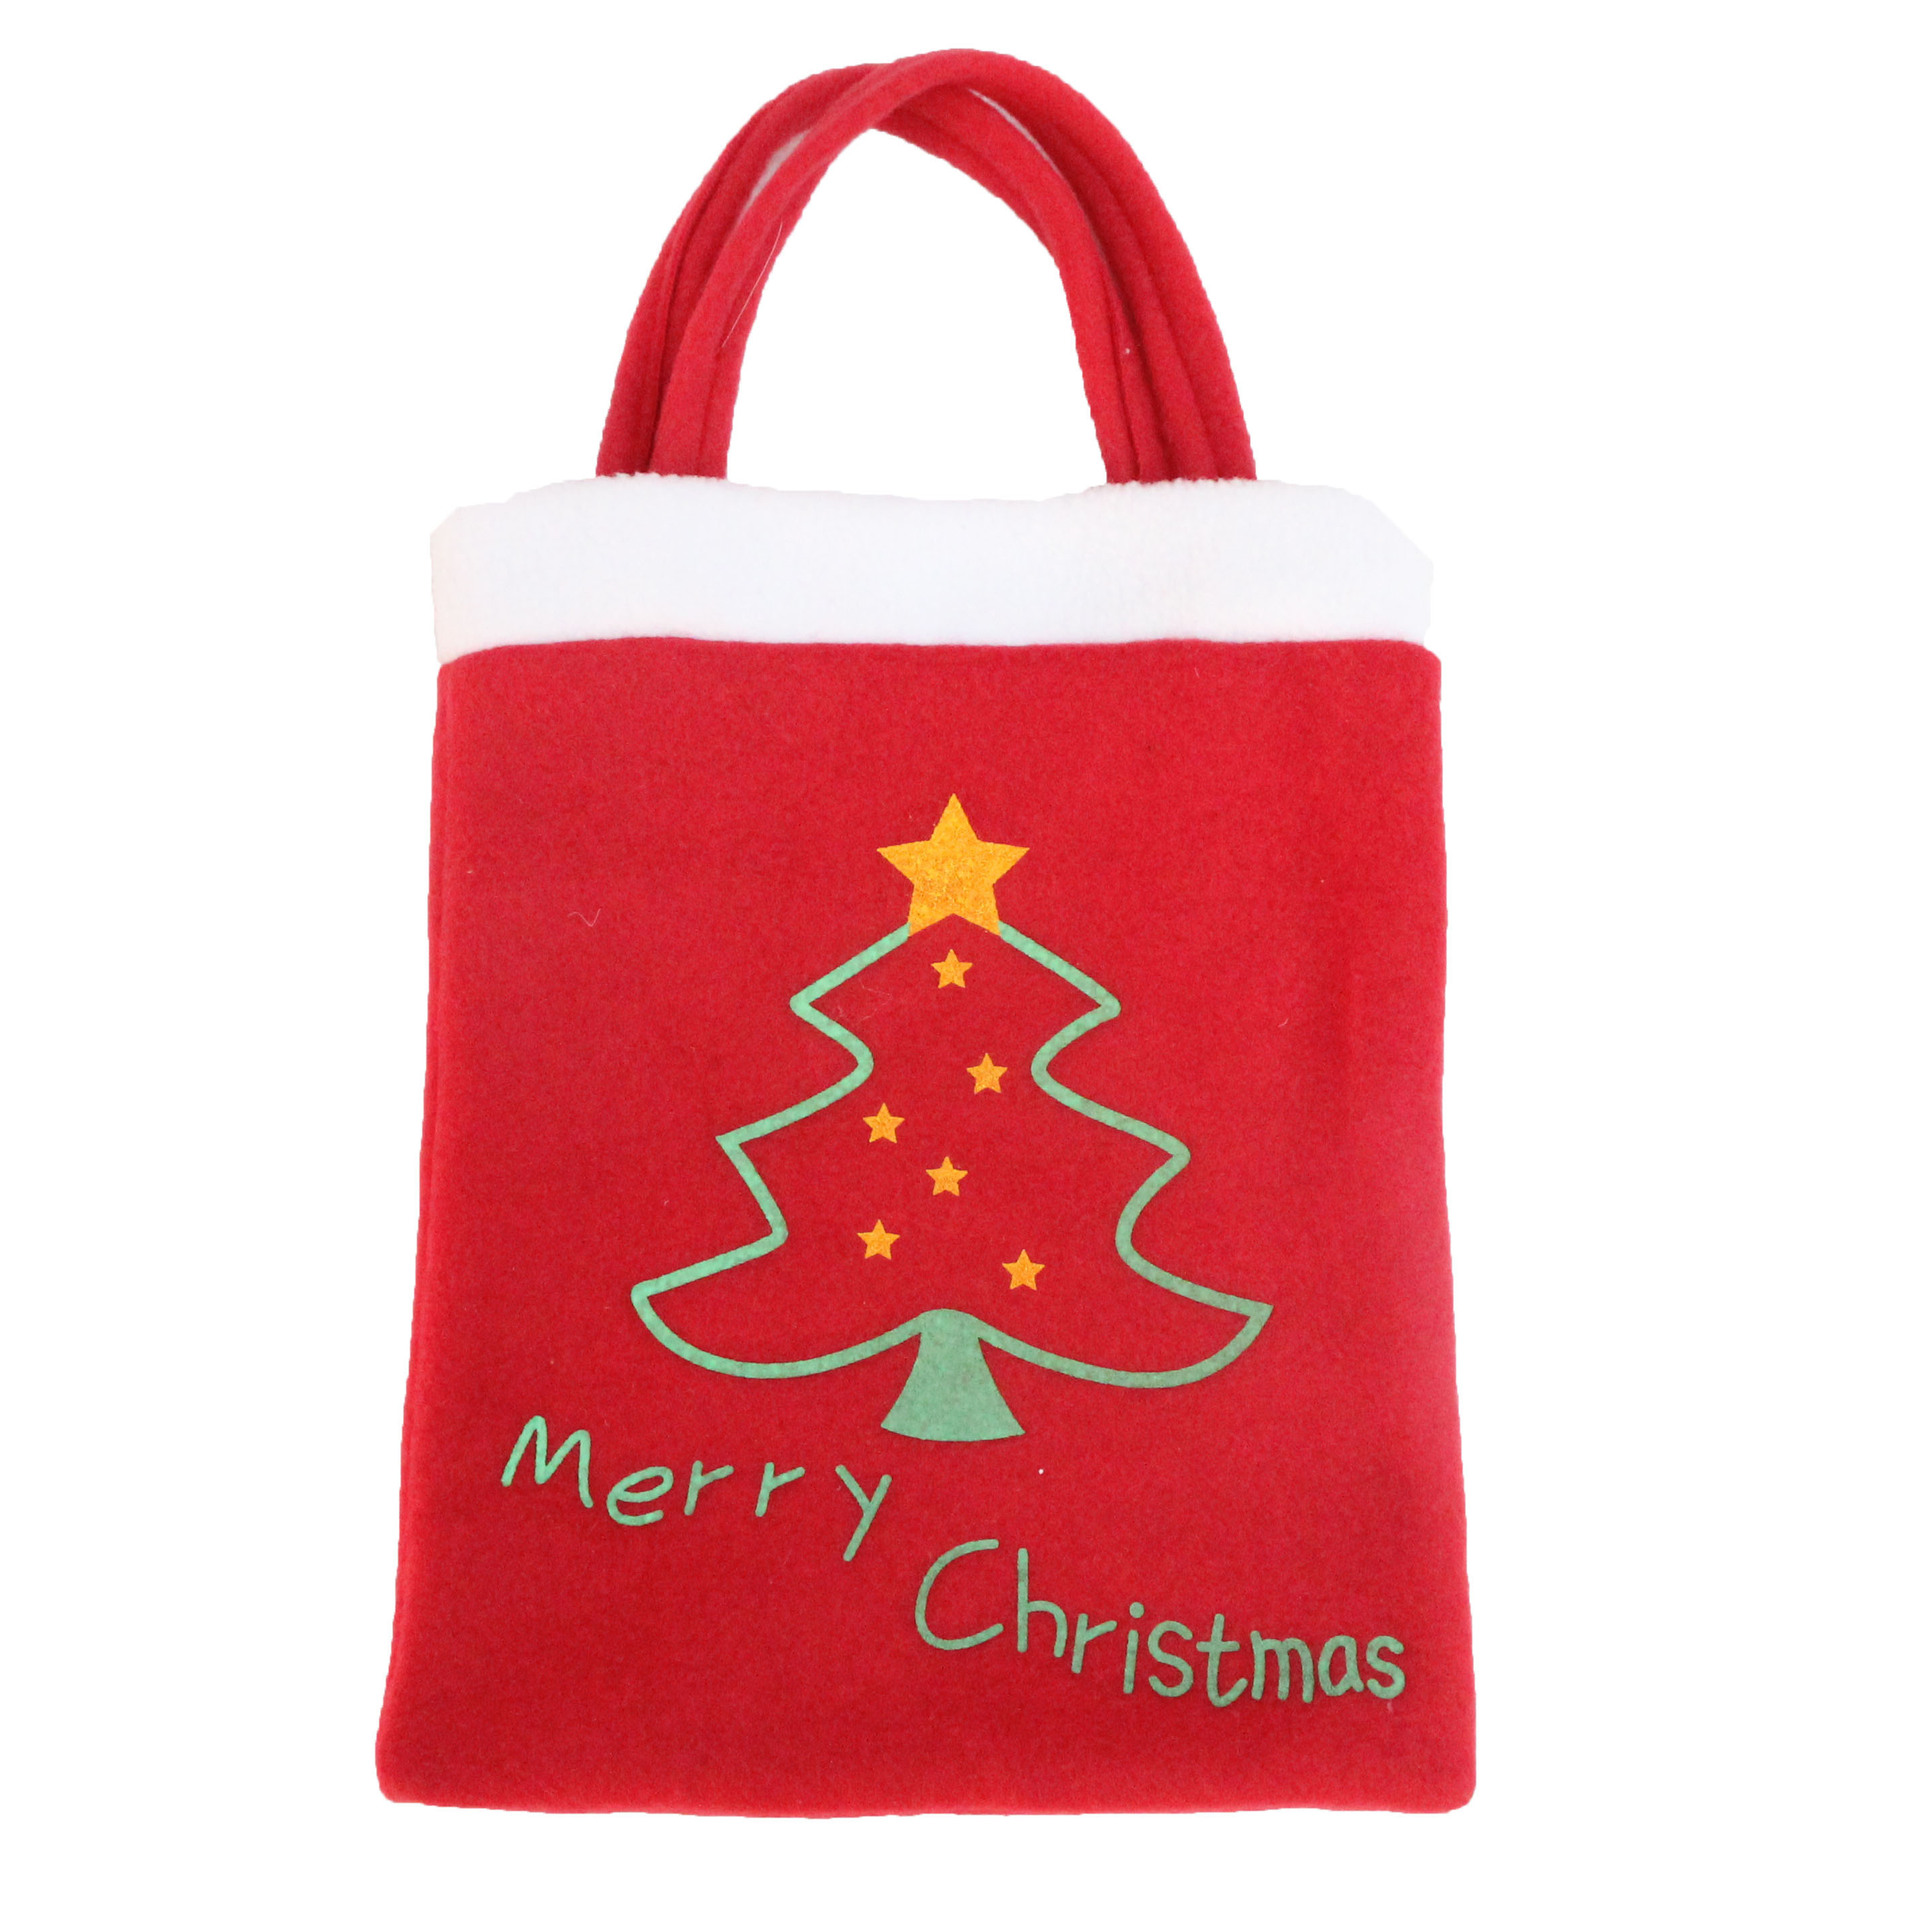 廠家直銷 圣誕禮物袋 圣誕禮品袋 2016新款